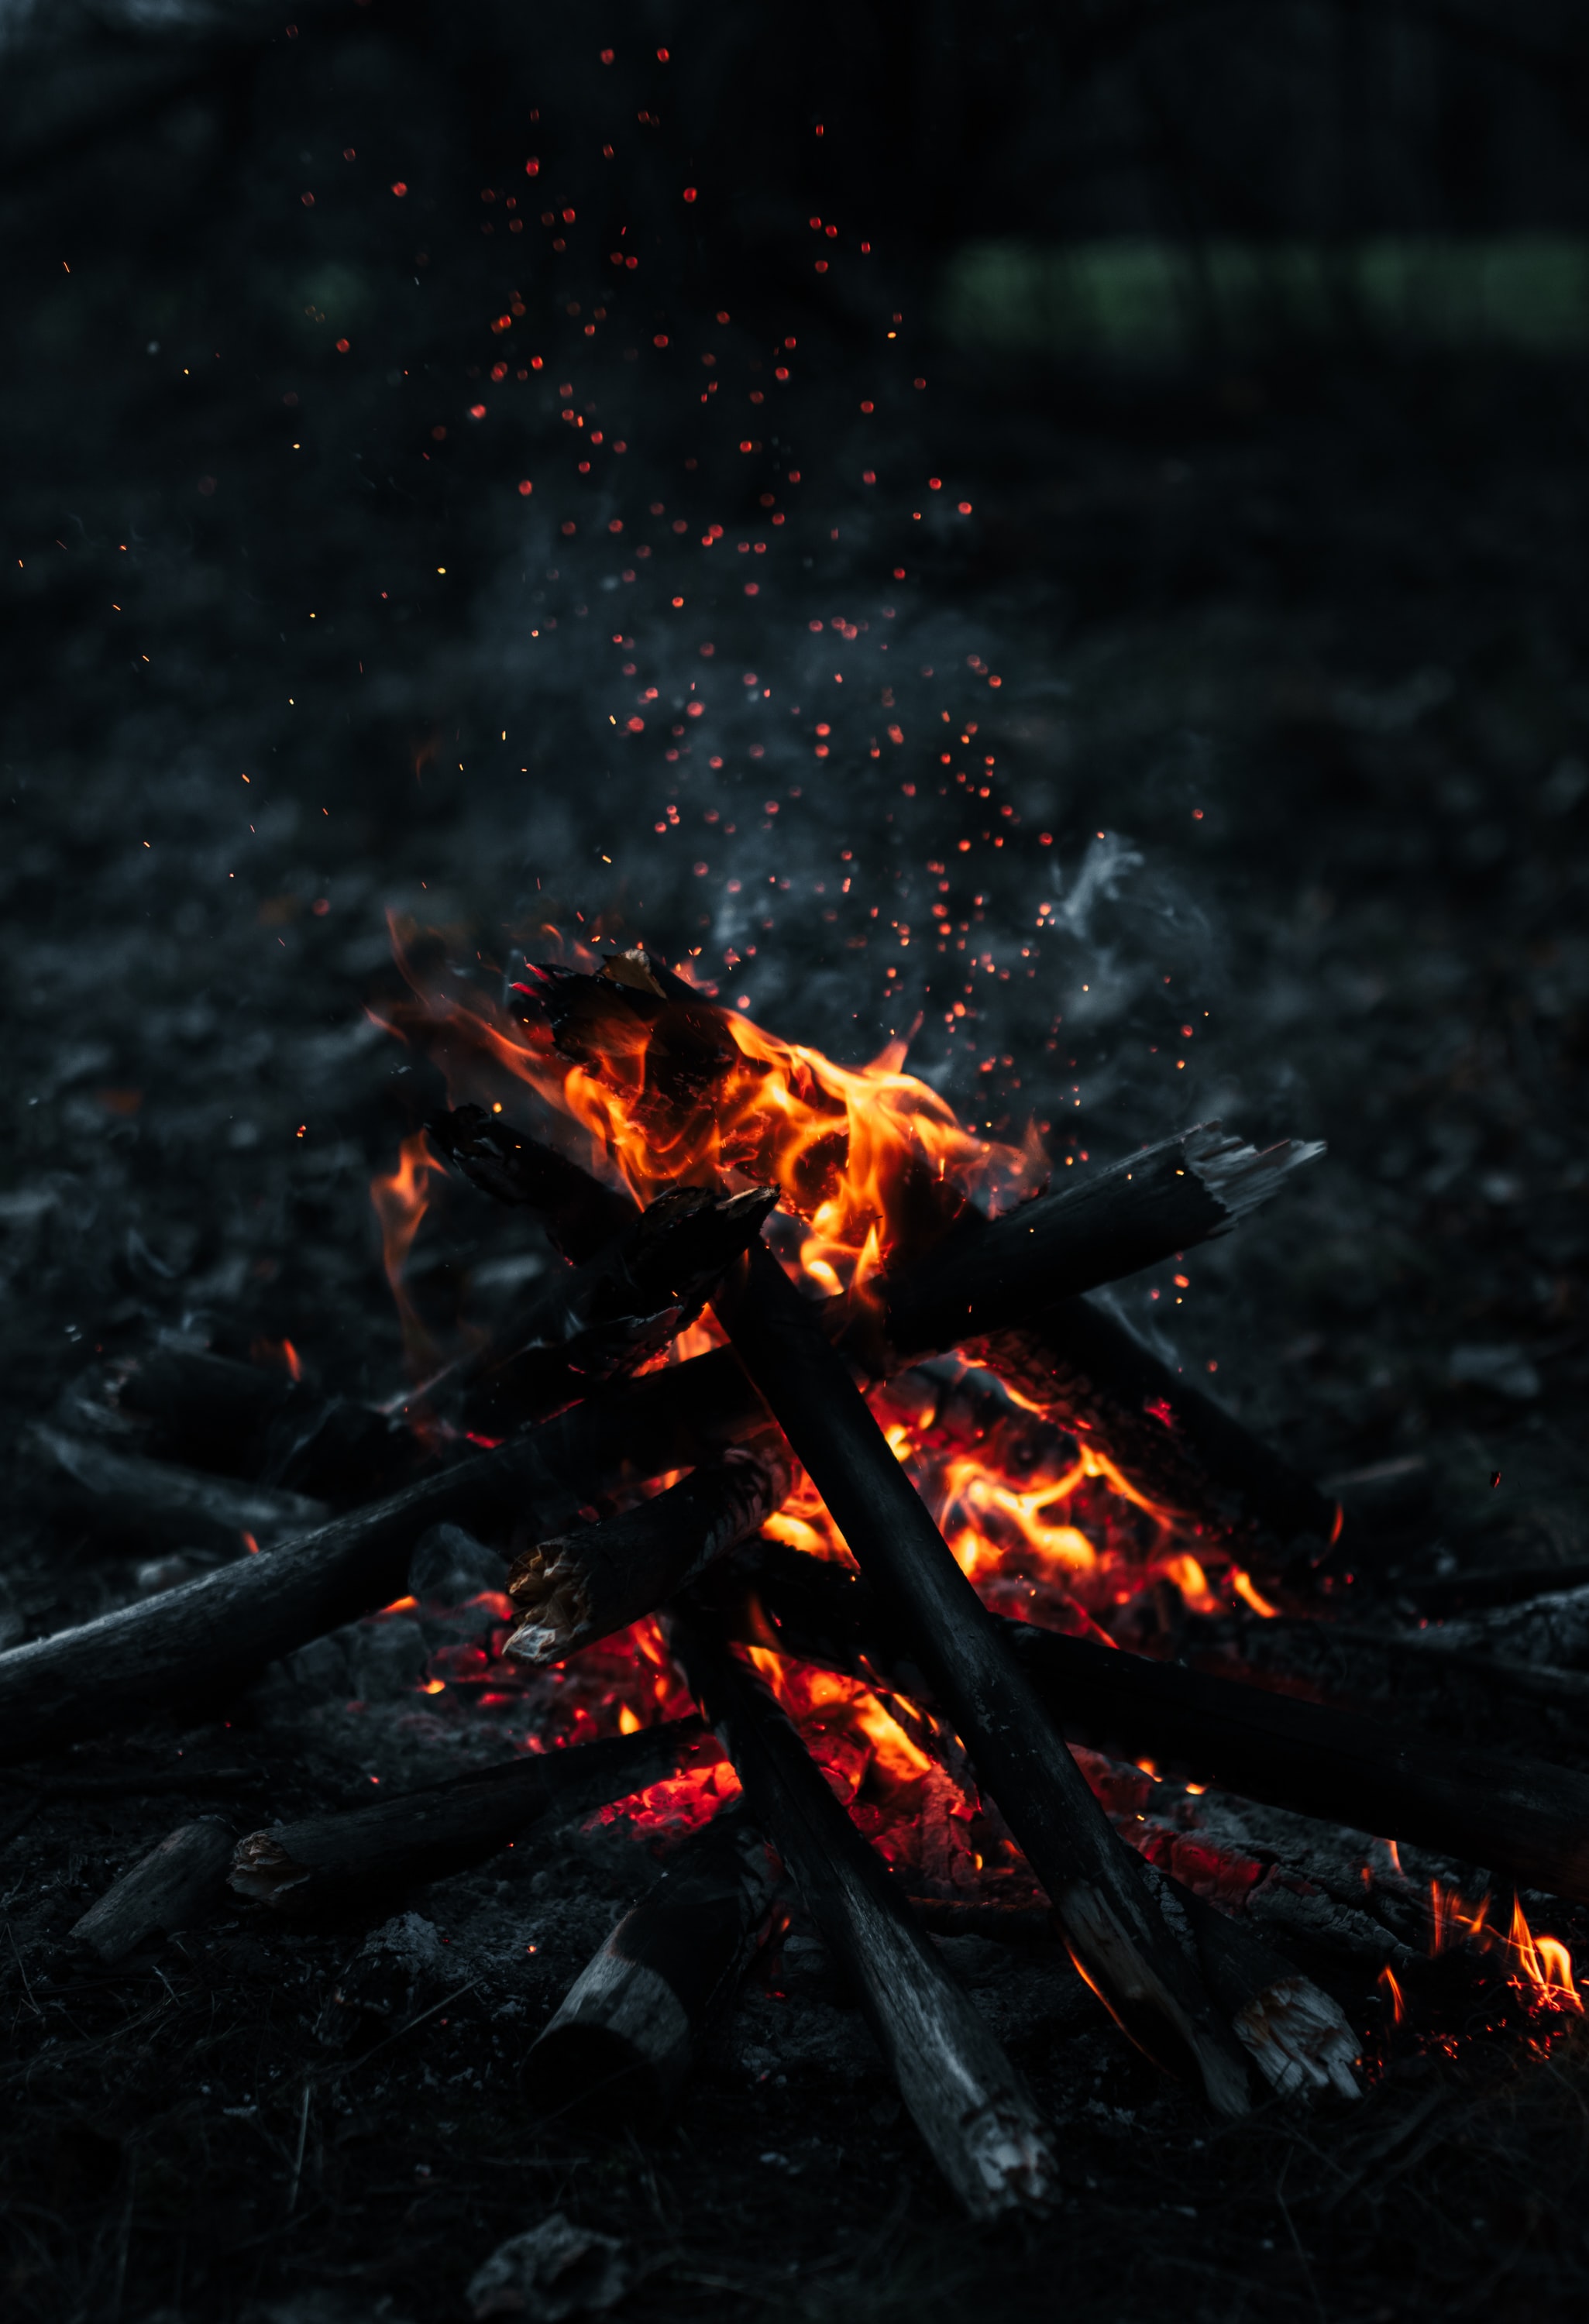 dark, fire, smoke, firewood, bonfire, sparks wallpaper for mobile